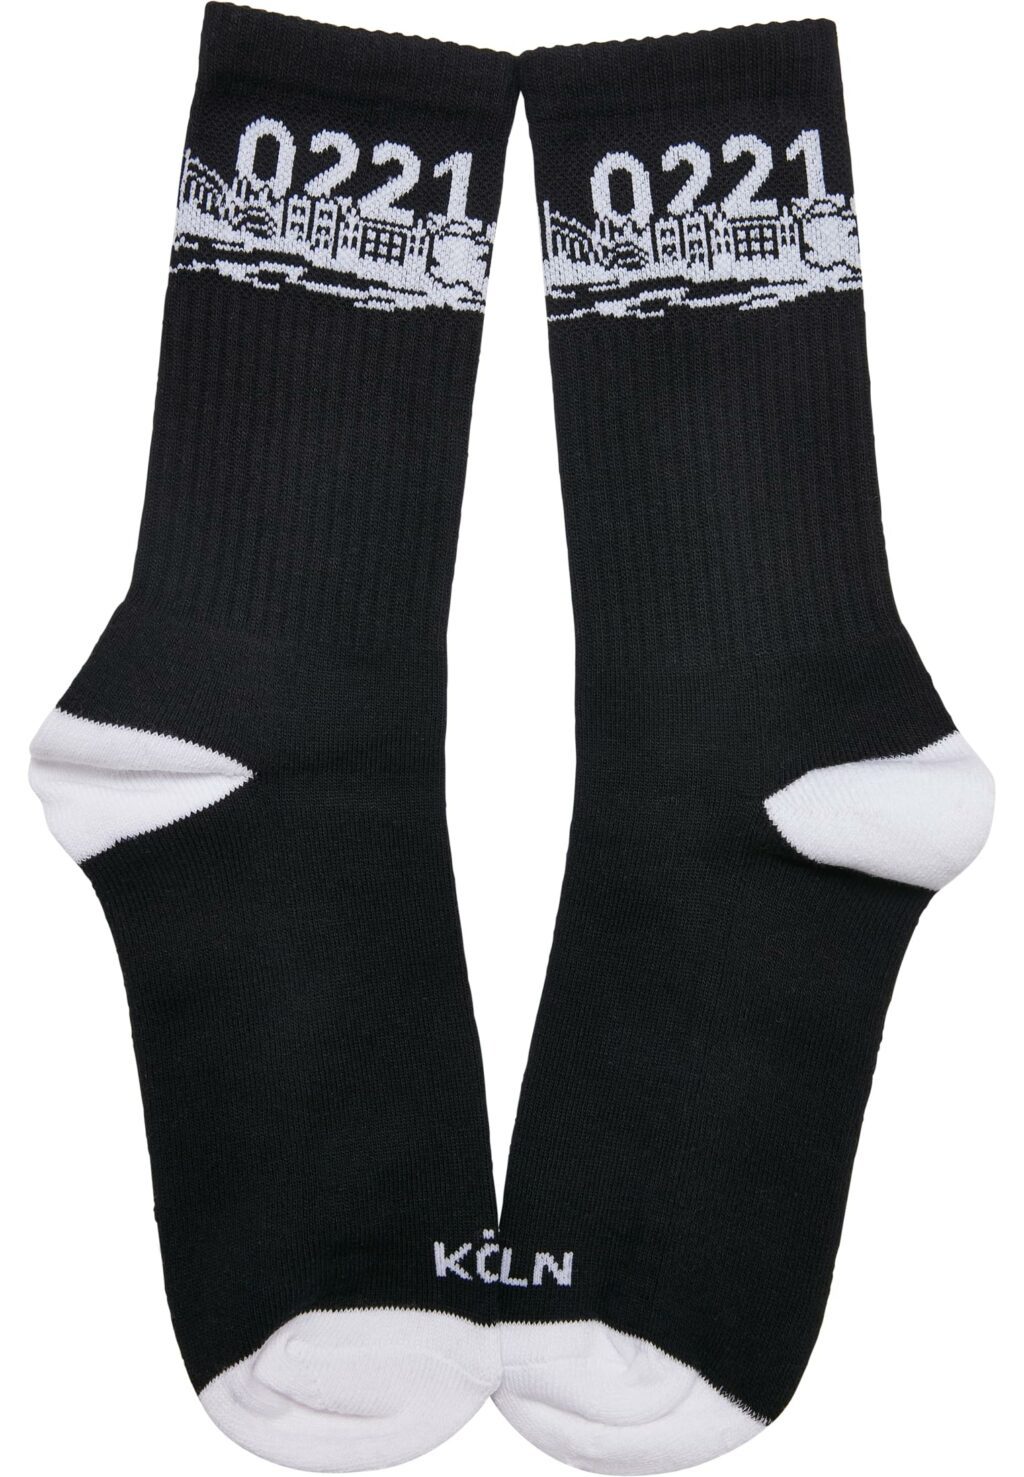 Major City 0221 Socks 2-Pack black/white MT2312